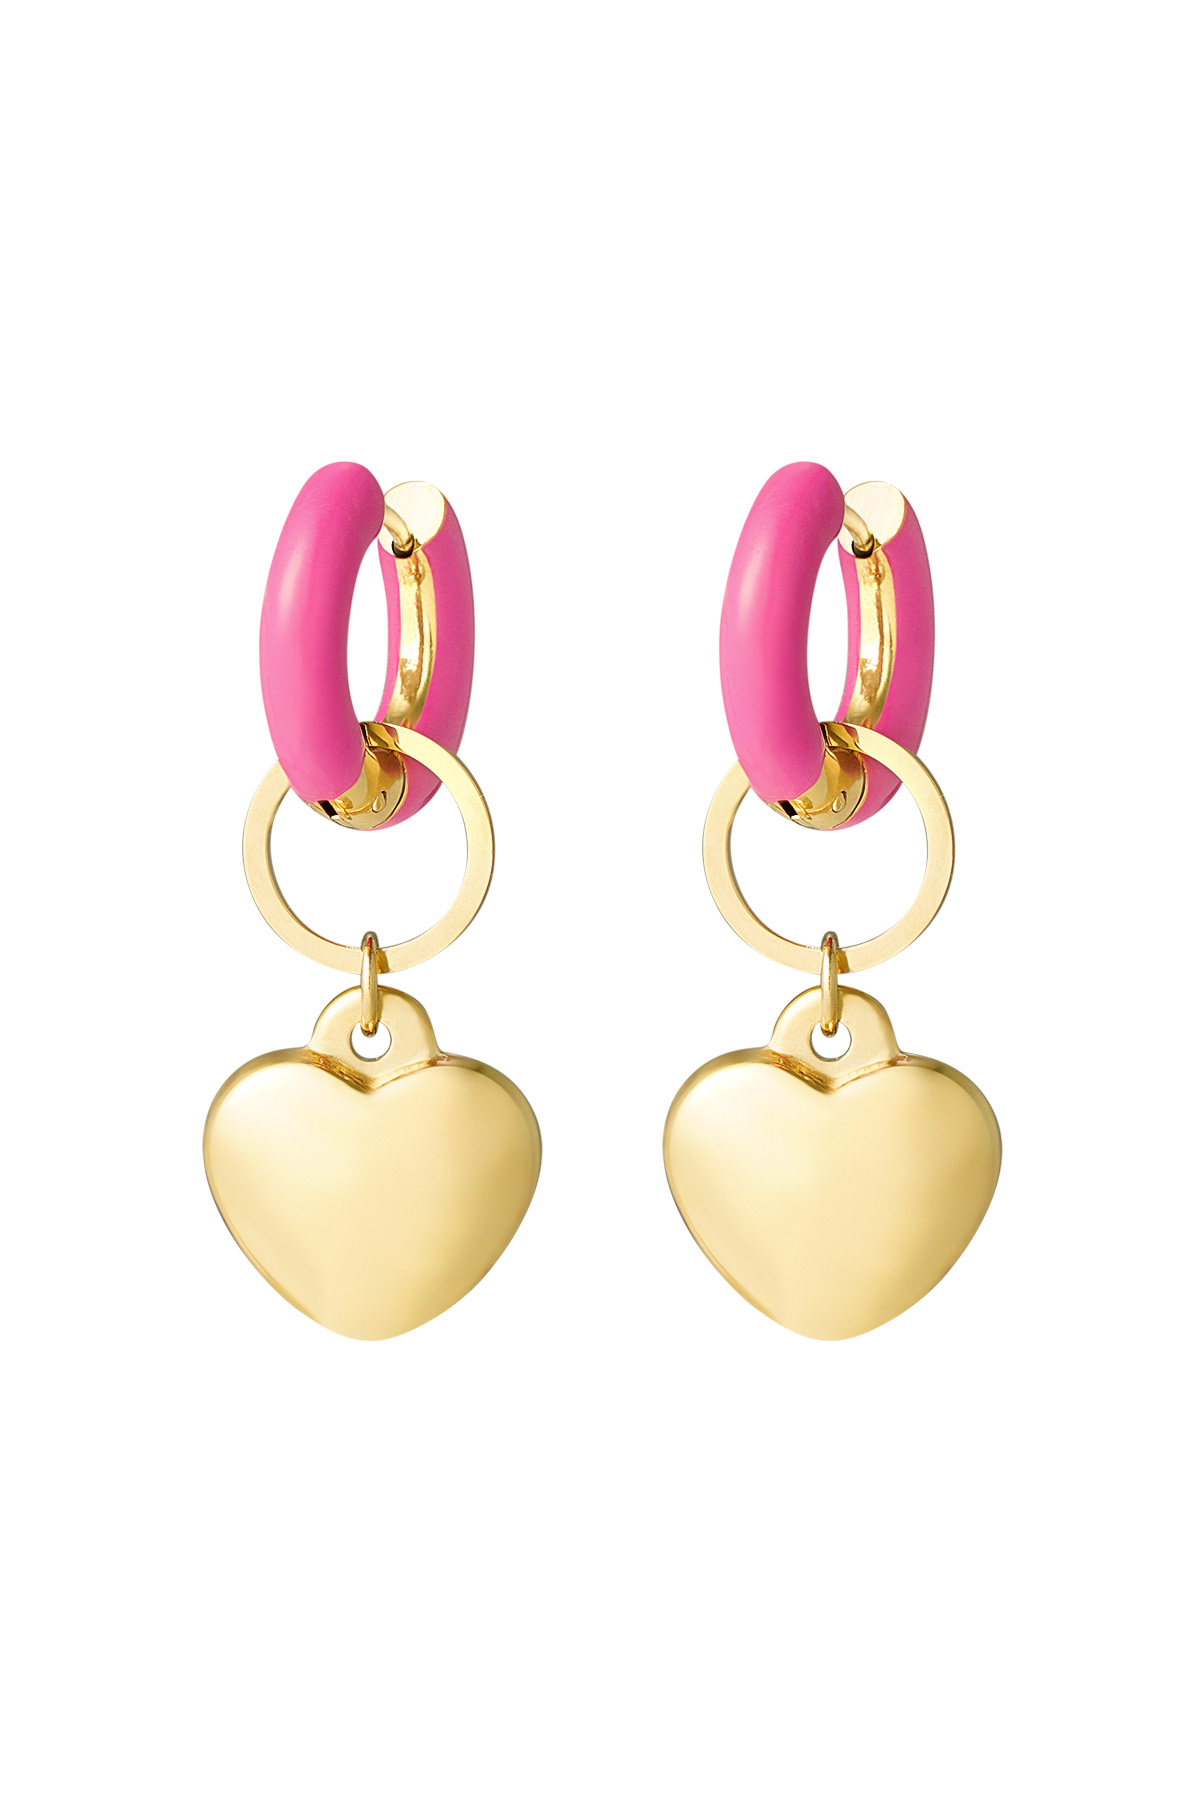 Boucle d'oreille anneau coloré avec coeur rose - or